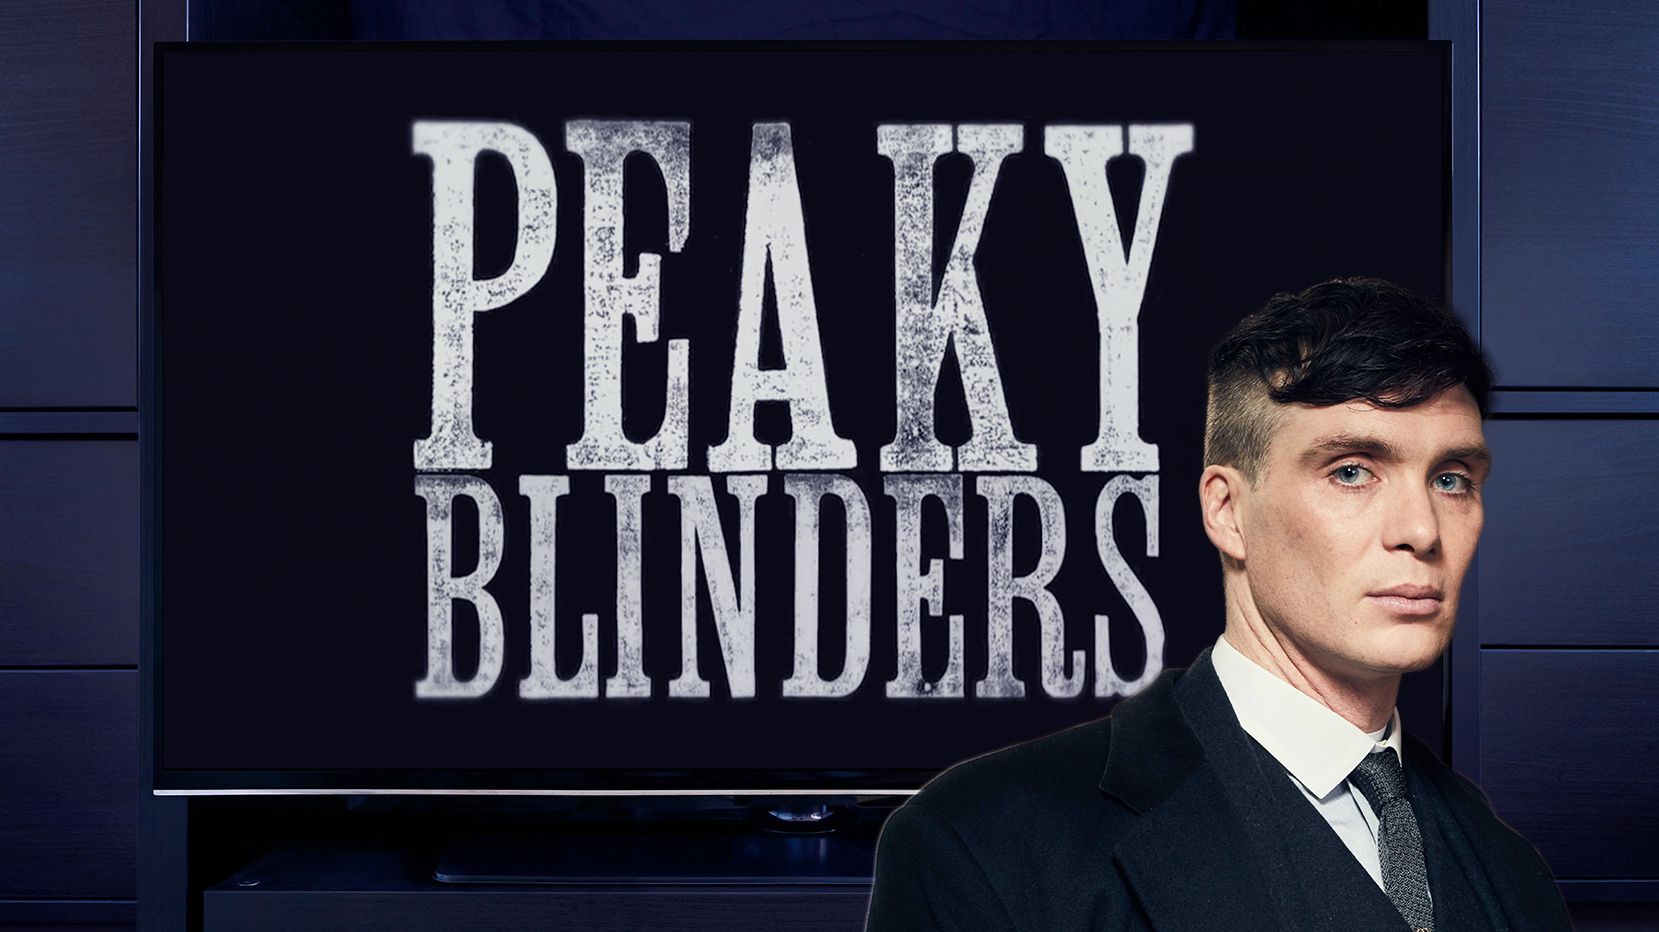 Peaky Blinders: Inside the final season